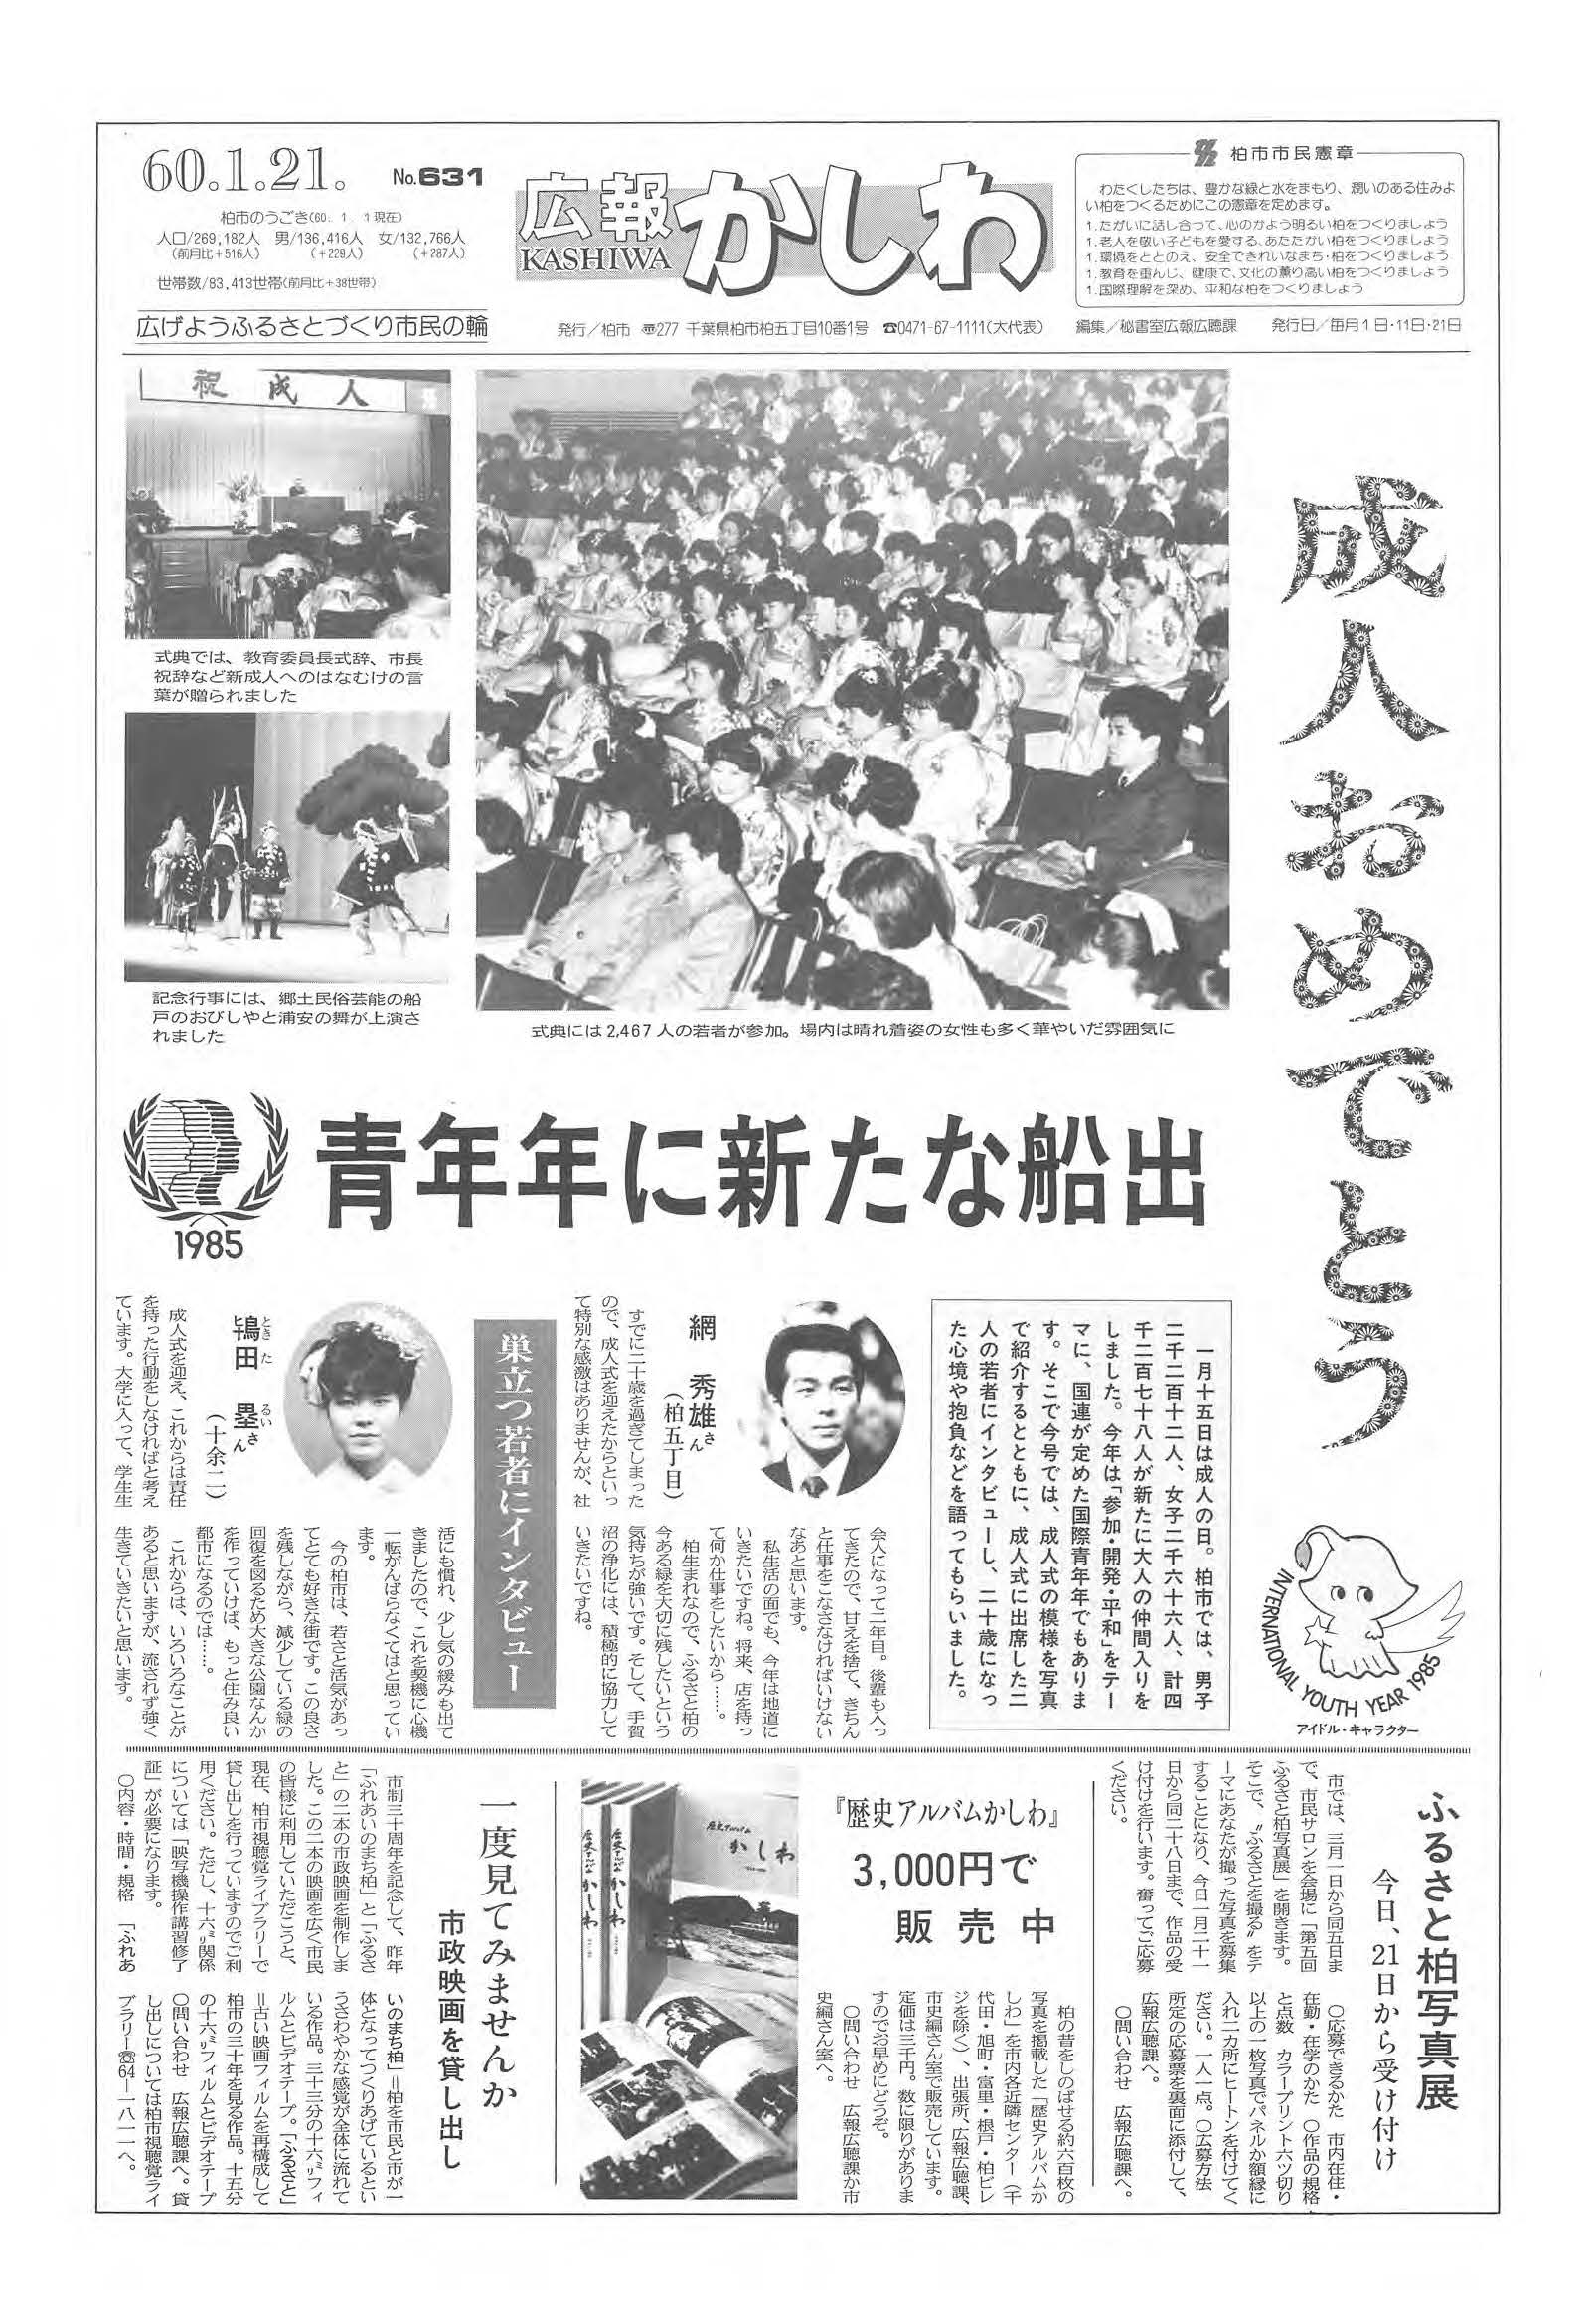 広報かしわ　昭和60年1月21日発行　631号